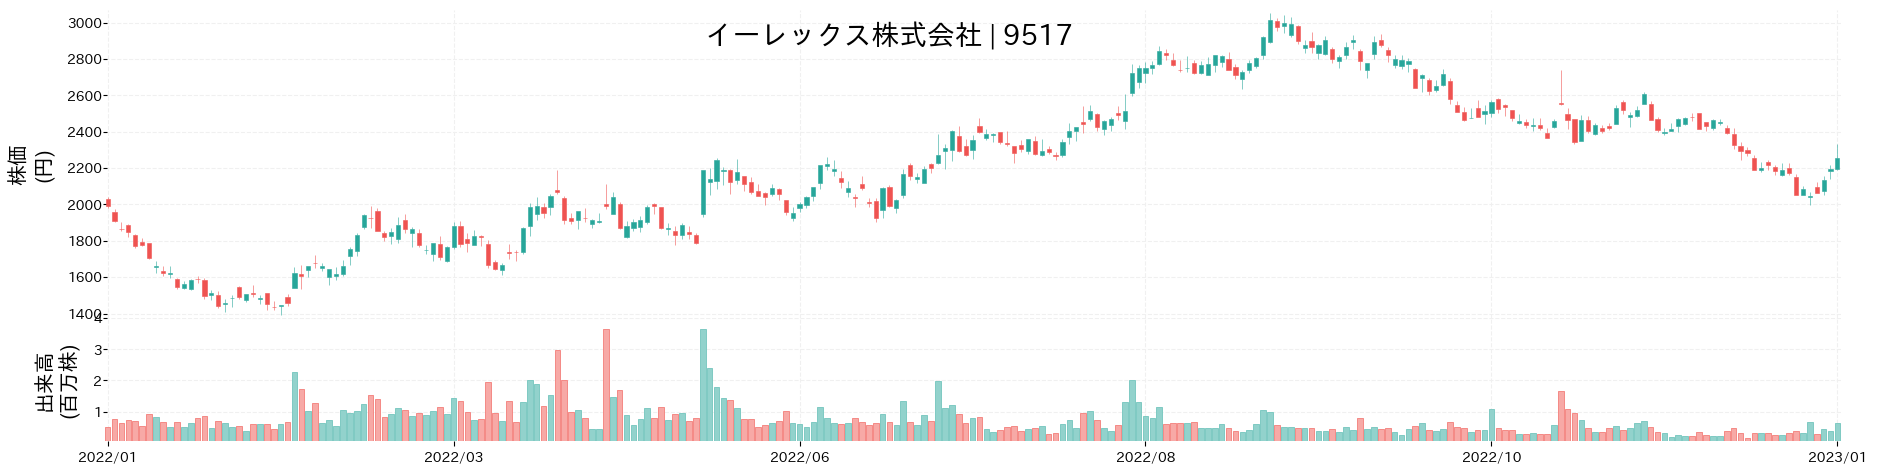 イーレックスの株価推移(2022)